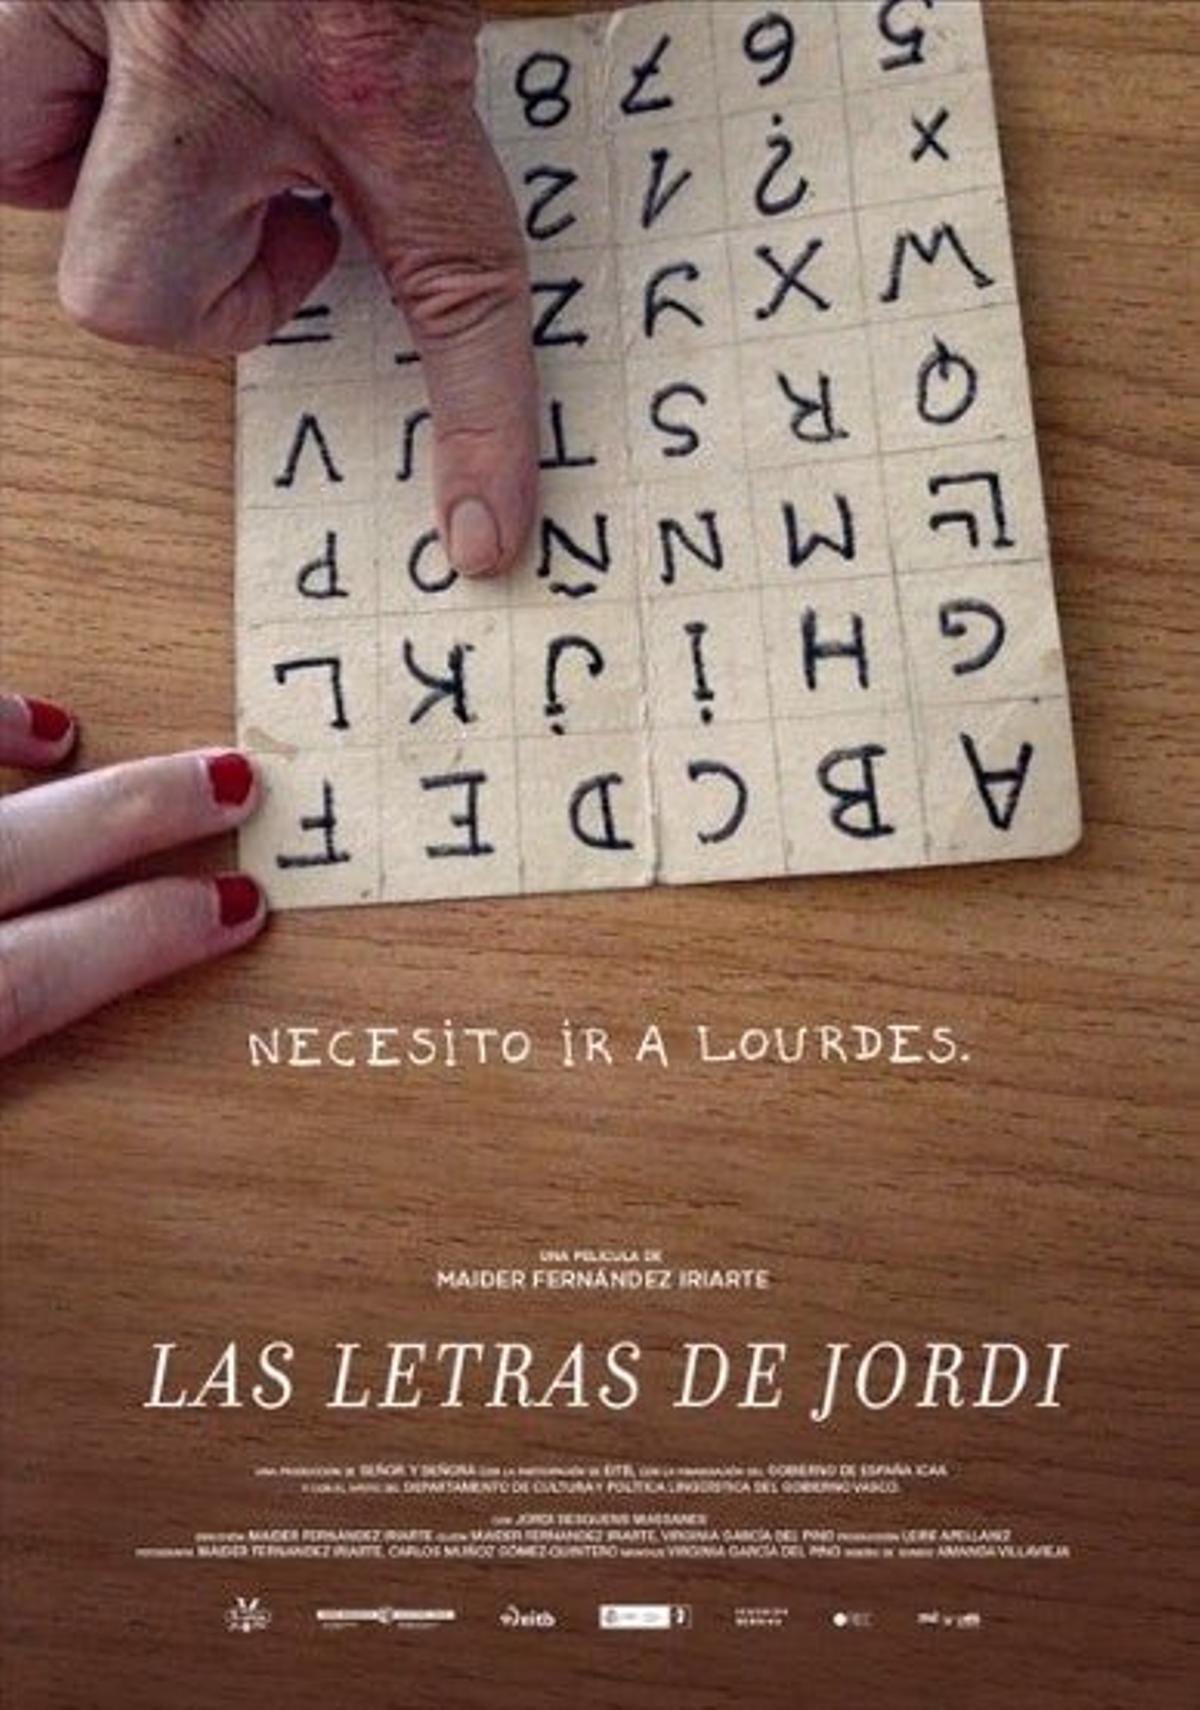 'Las letras de Jordi', el 10 de agosto